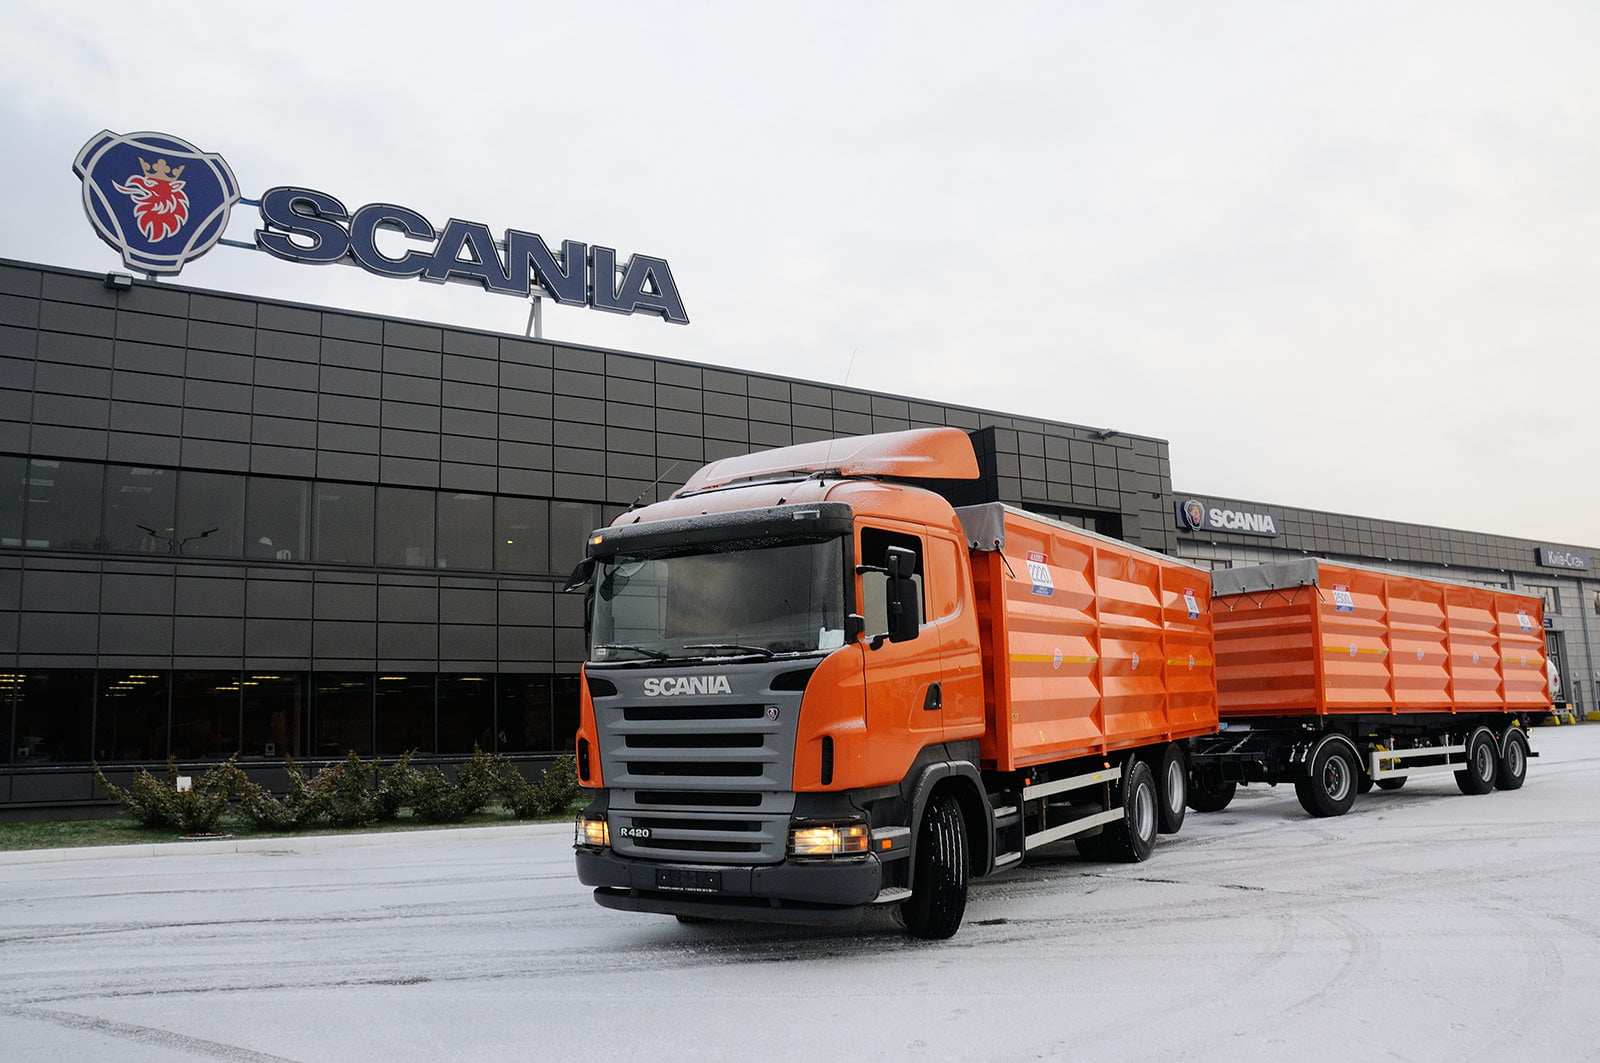 Тягачи Scania с пробегом на складе в Украине (2005-2008 гг. производств)